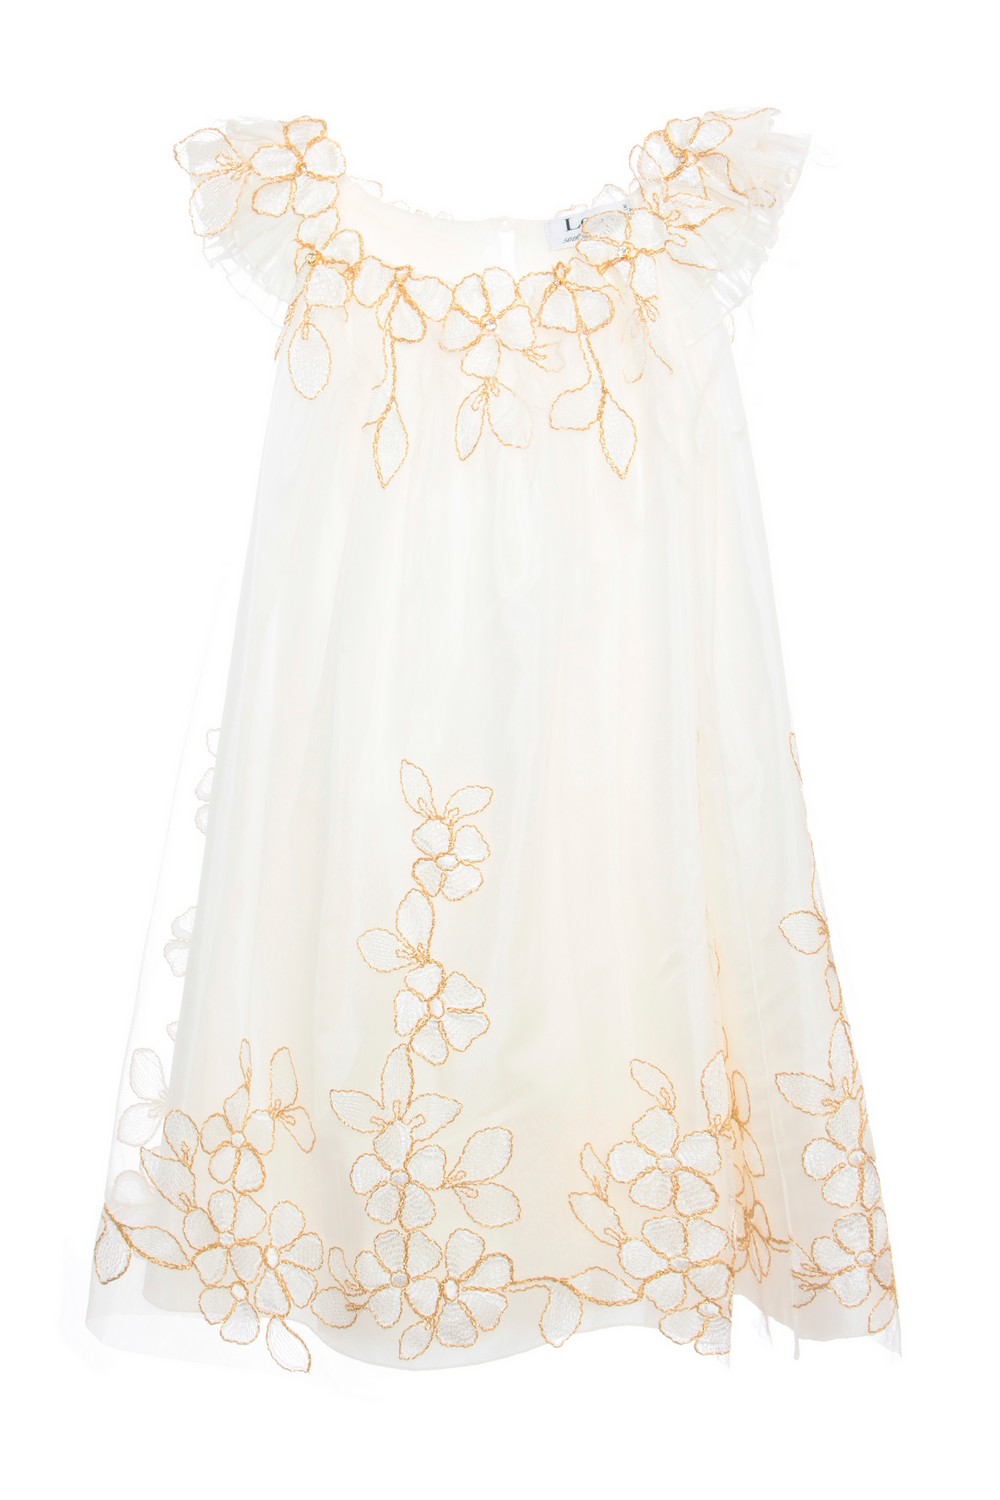 Lesy Воздушное платье с цветочной вышивкой